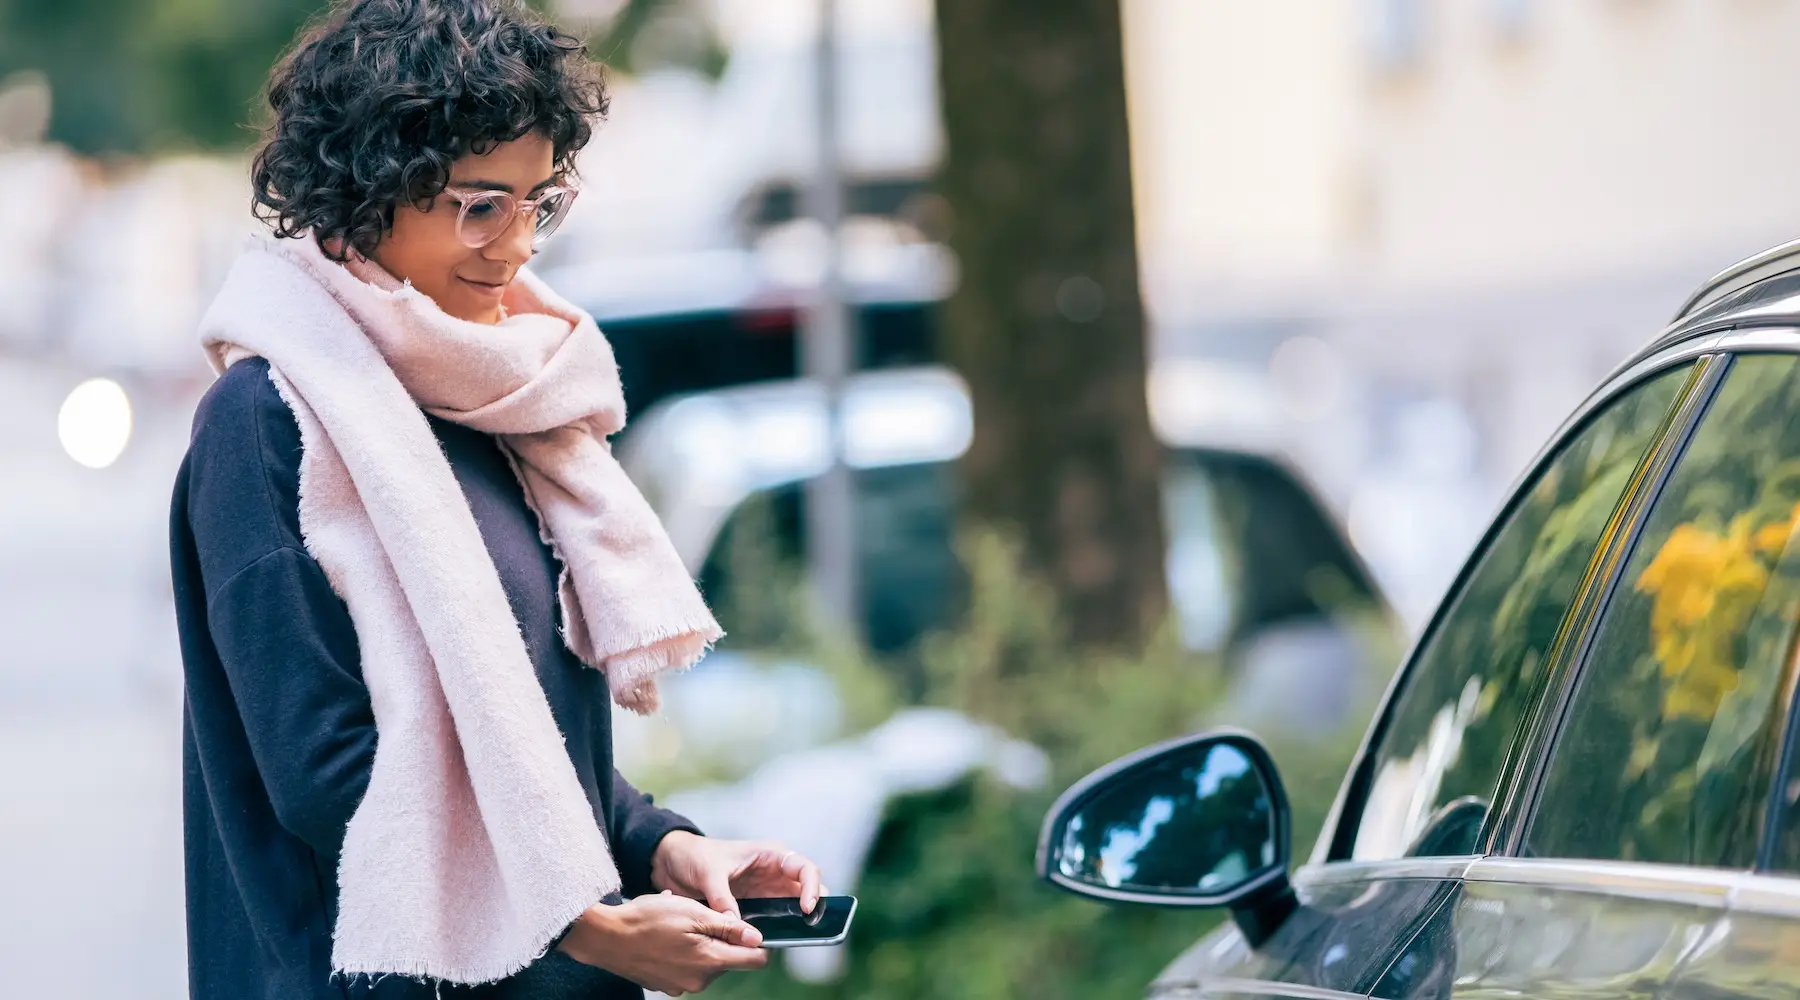 woman with phone near a car